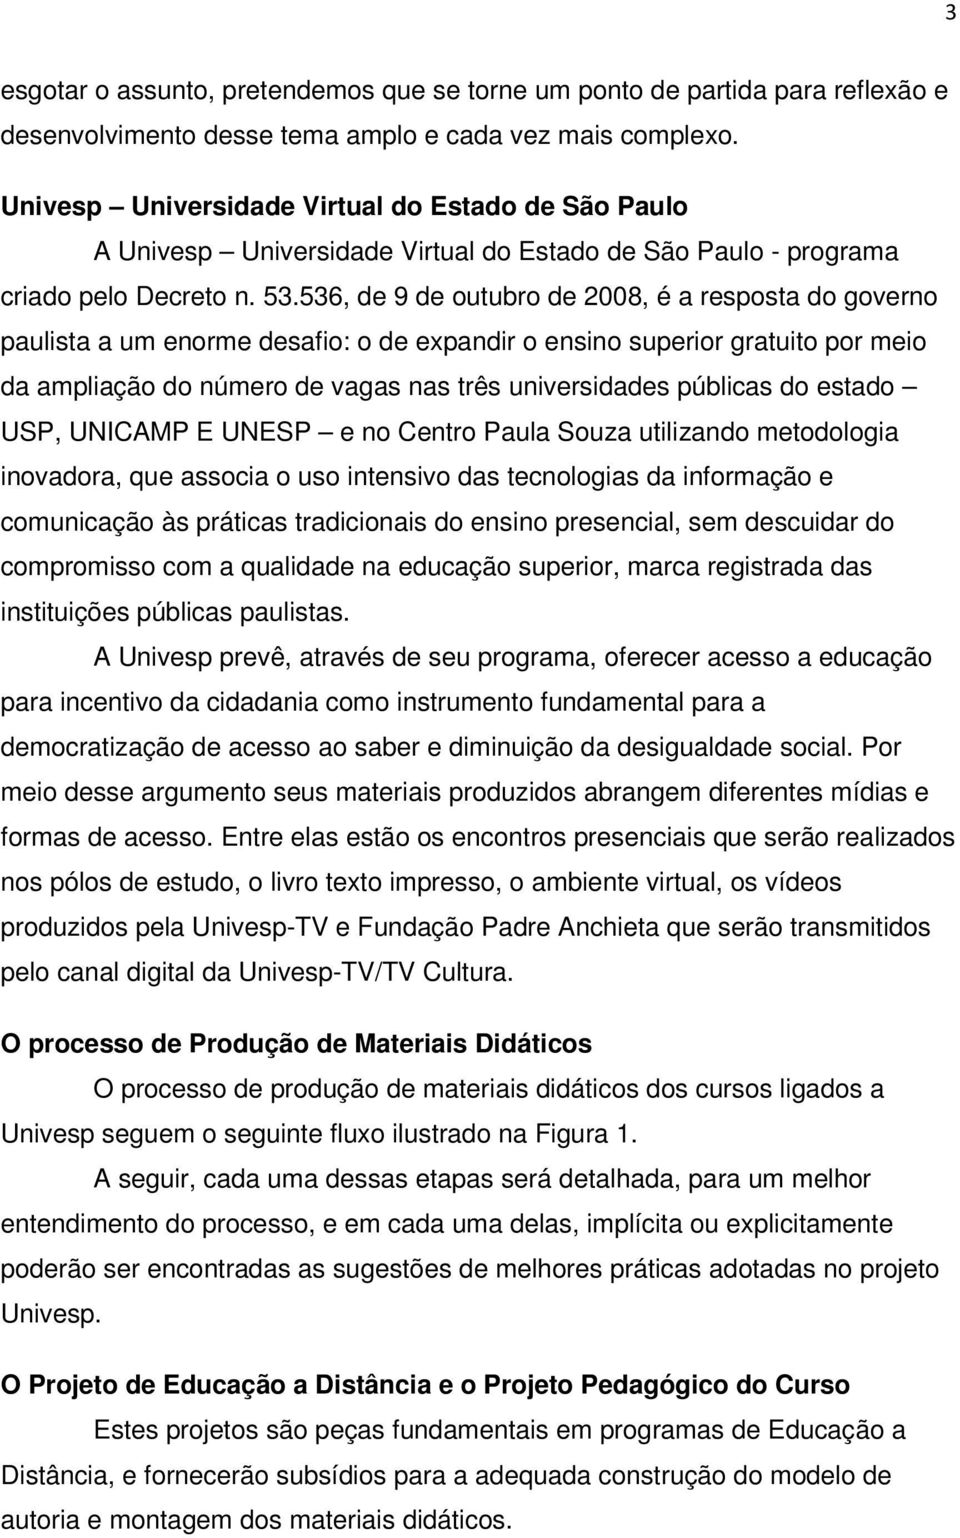 536, de 9 de outubro de 2008, é a resposta do governo paulista a um enorme desafio: o de expandir o ensino superior gratuito por meio da ampliação do número de vagas nas três universidades públicas